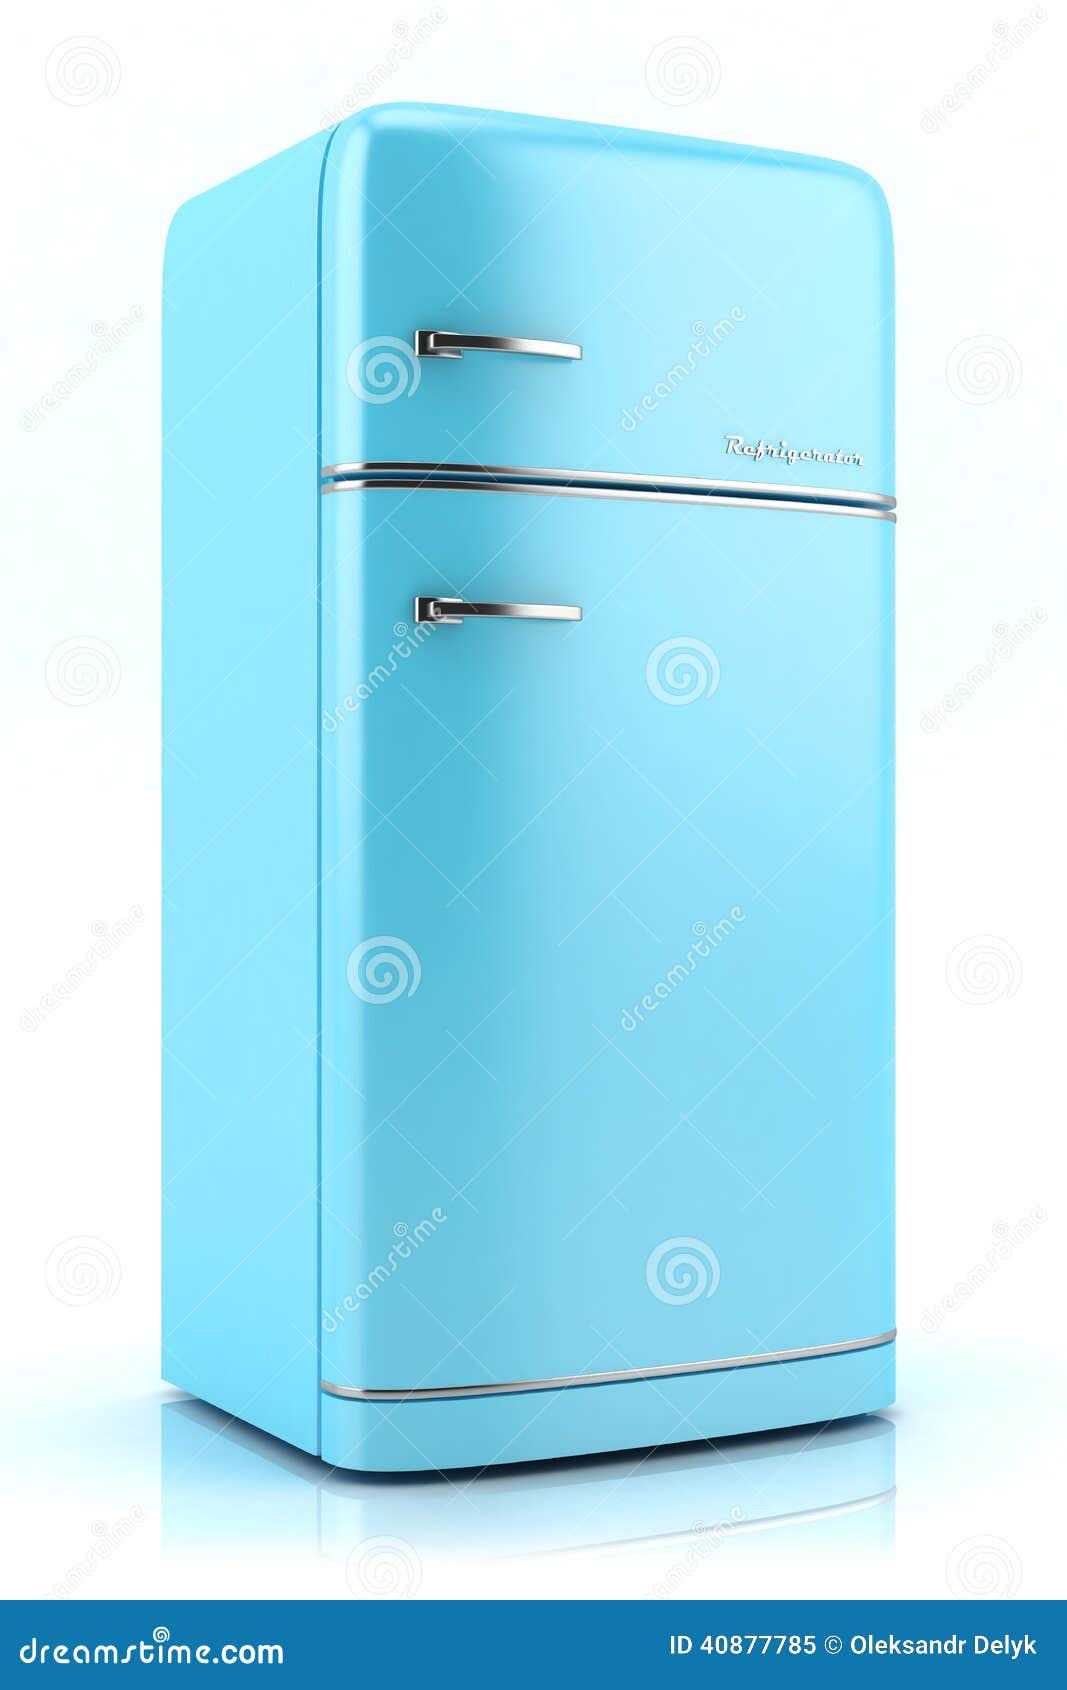 blue retro refrigerator d white background 40877785